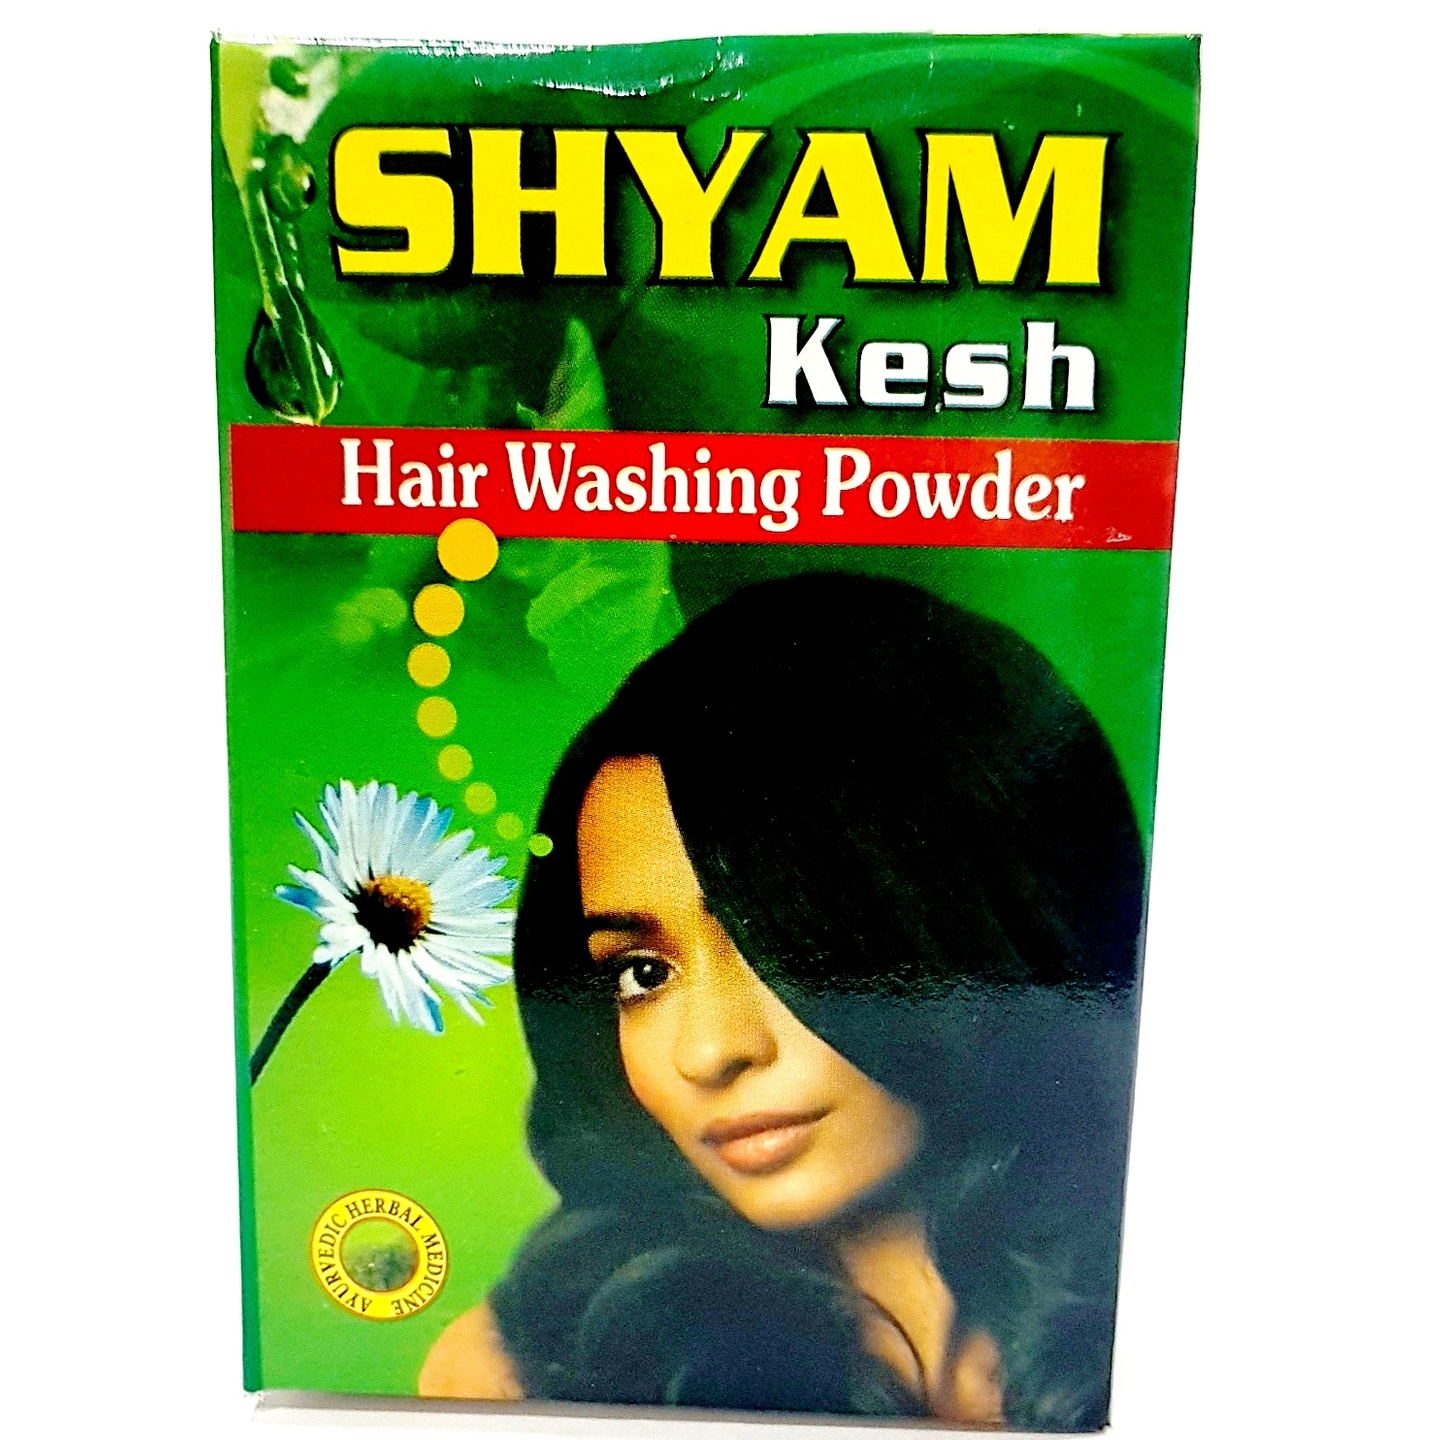 Shyam kesh Hair washing powder